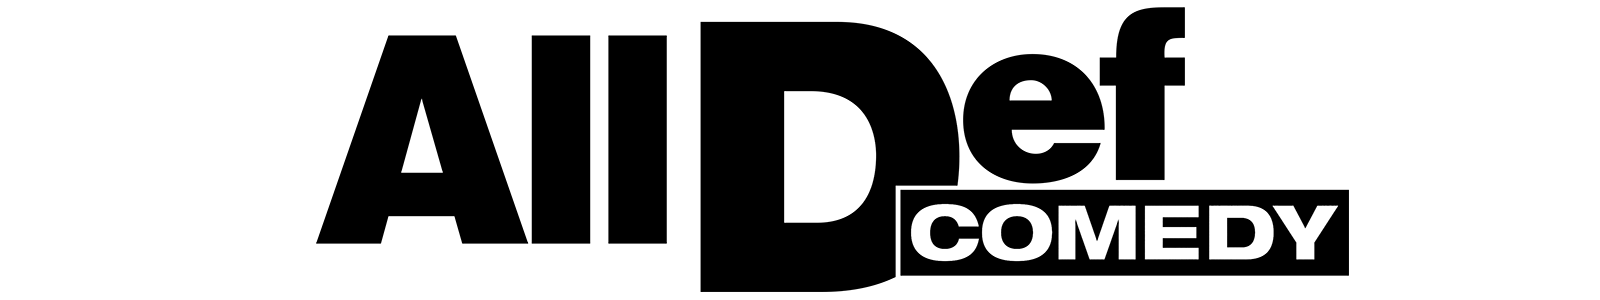 HBO Comedy Logo - E1: Deray Davis Video - All Def Comedy | HBO